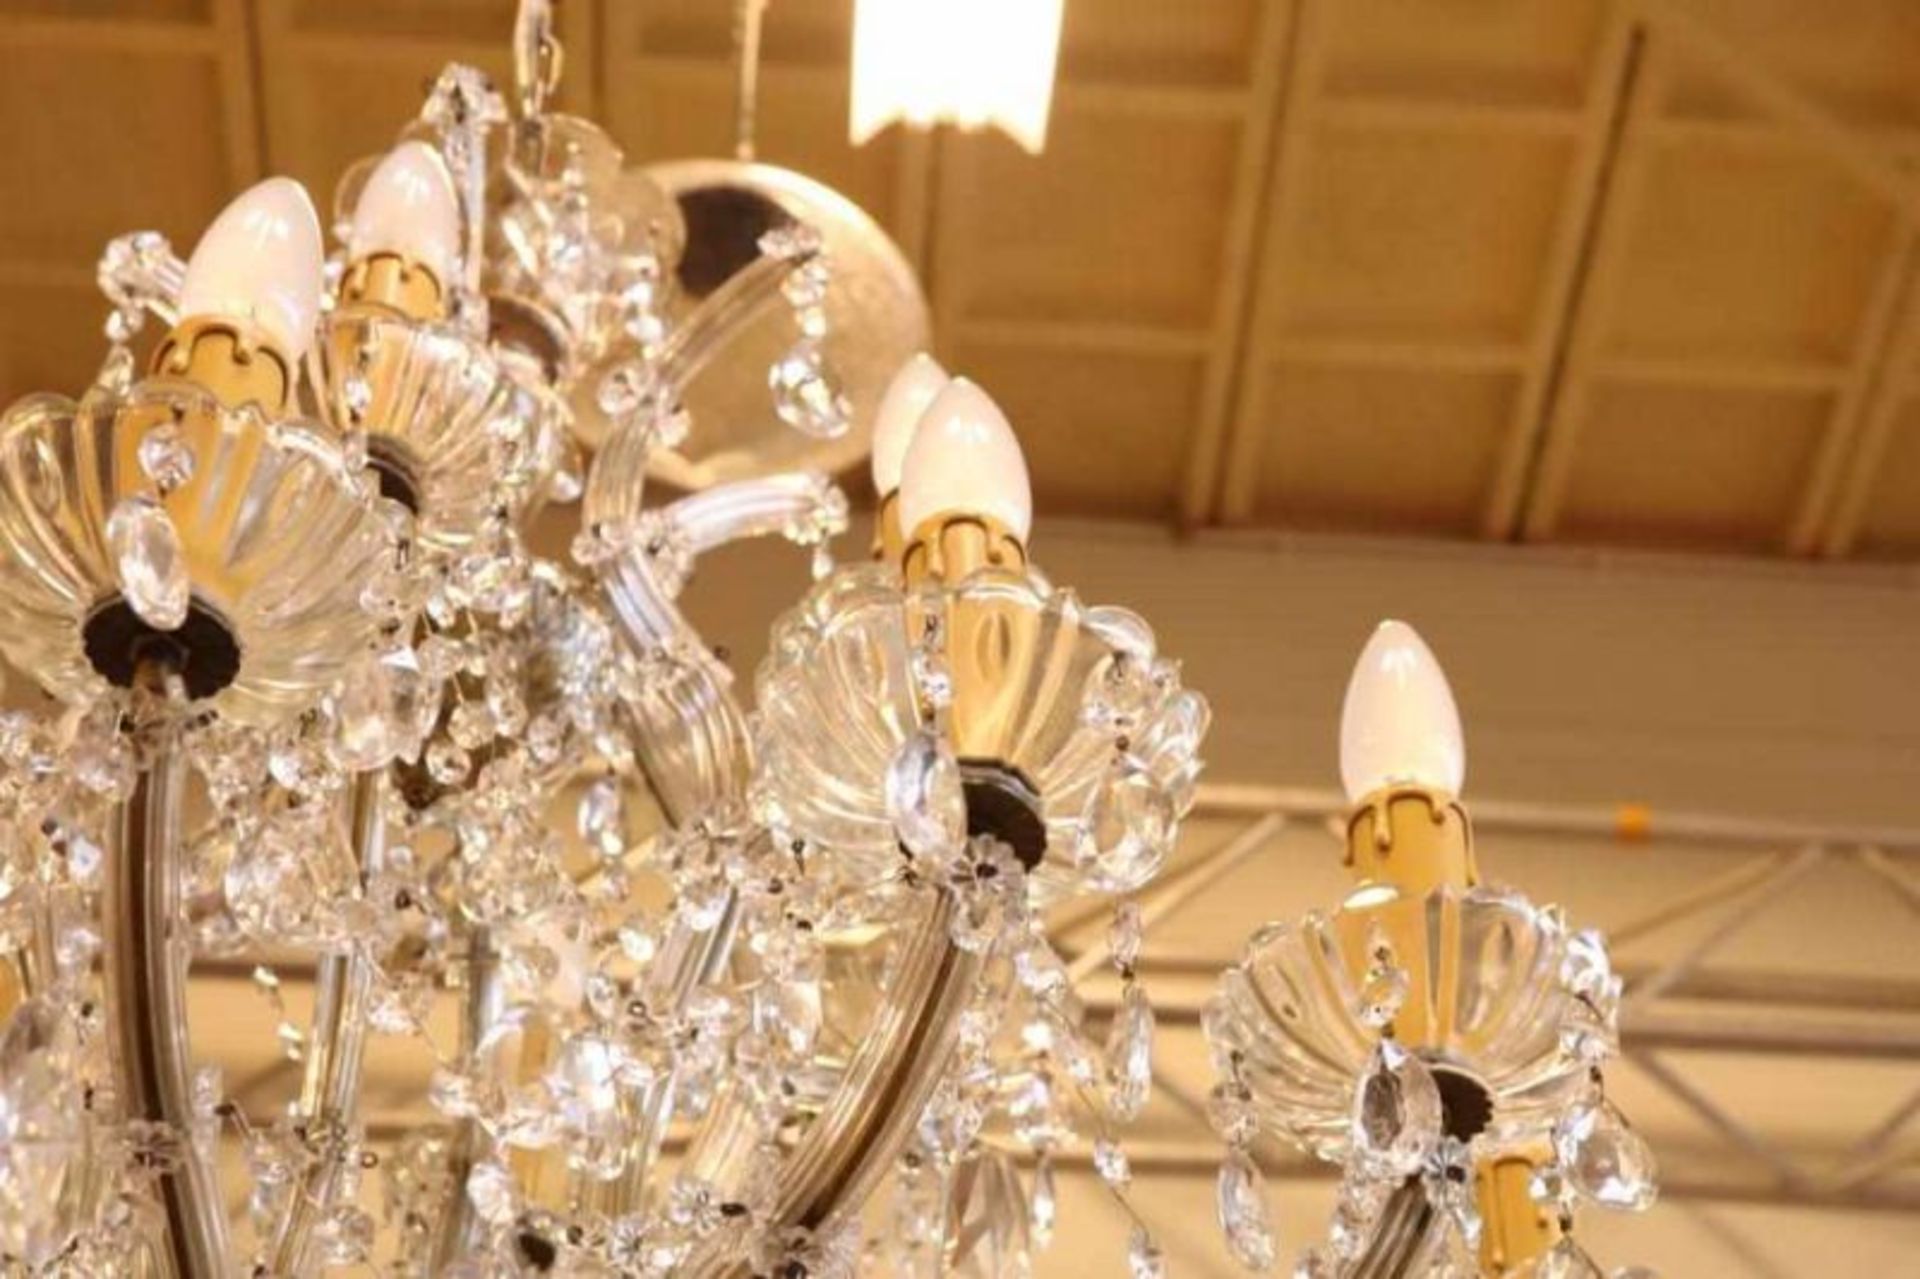 19 lichts hangkroom met kristallen pegels Chandelier with 19 lights and cristal ornaments - Bild 3 aus 3